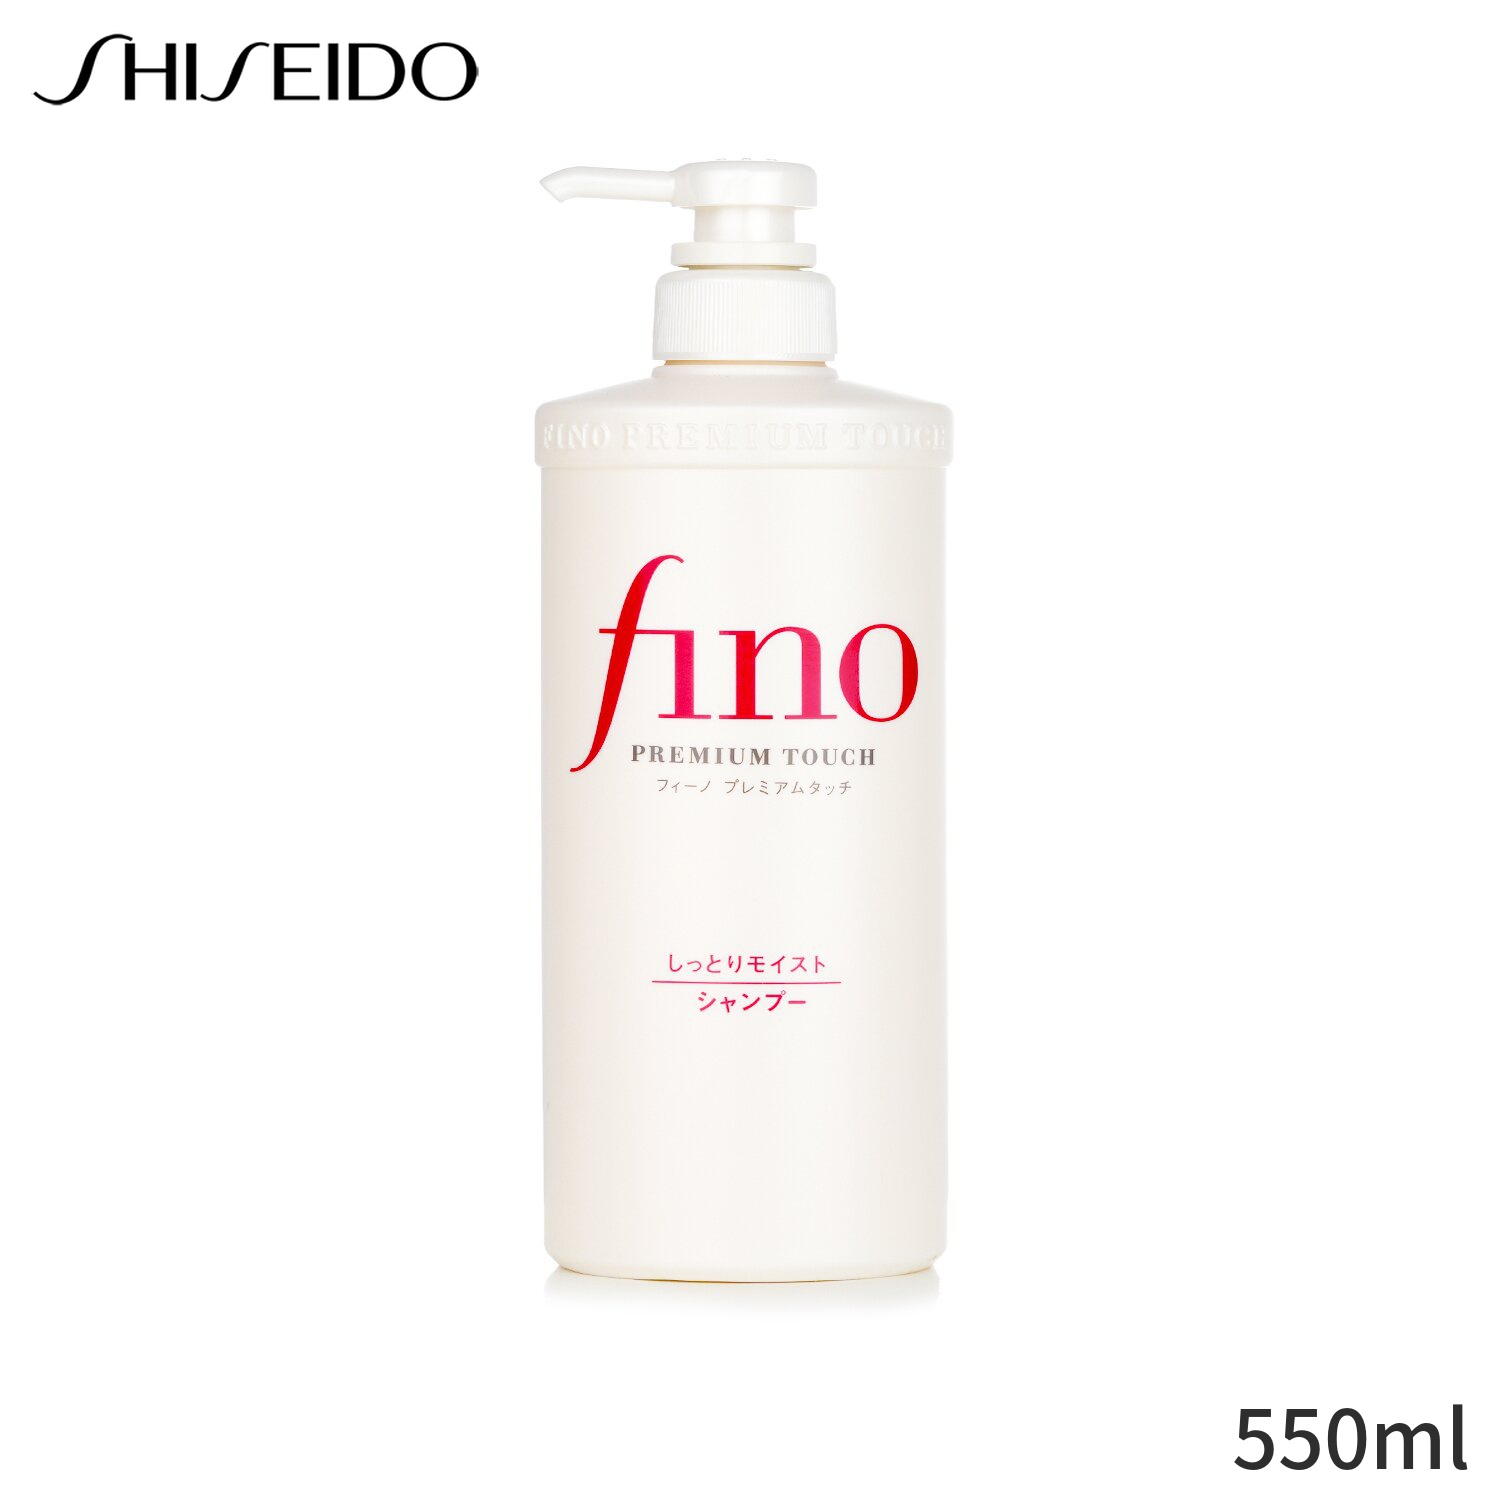 保障できる SHISEIDO Fino Premium Touch Shampoo 550ml<br>資生堂 フィーノ プレミアムタッチ シャンプー<br>4550516475961 